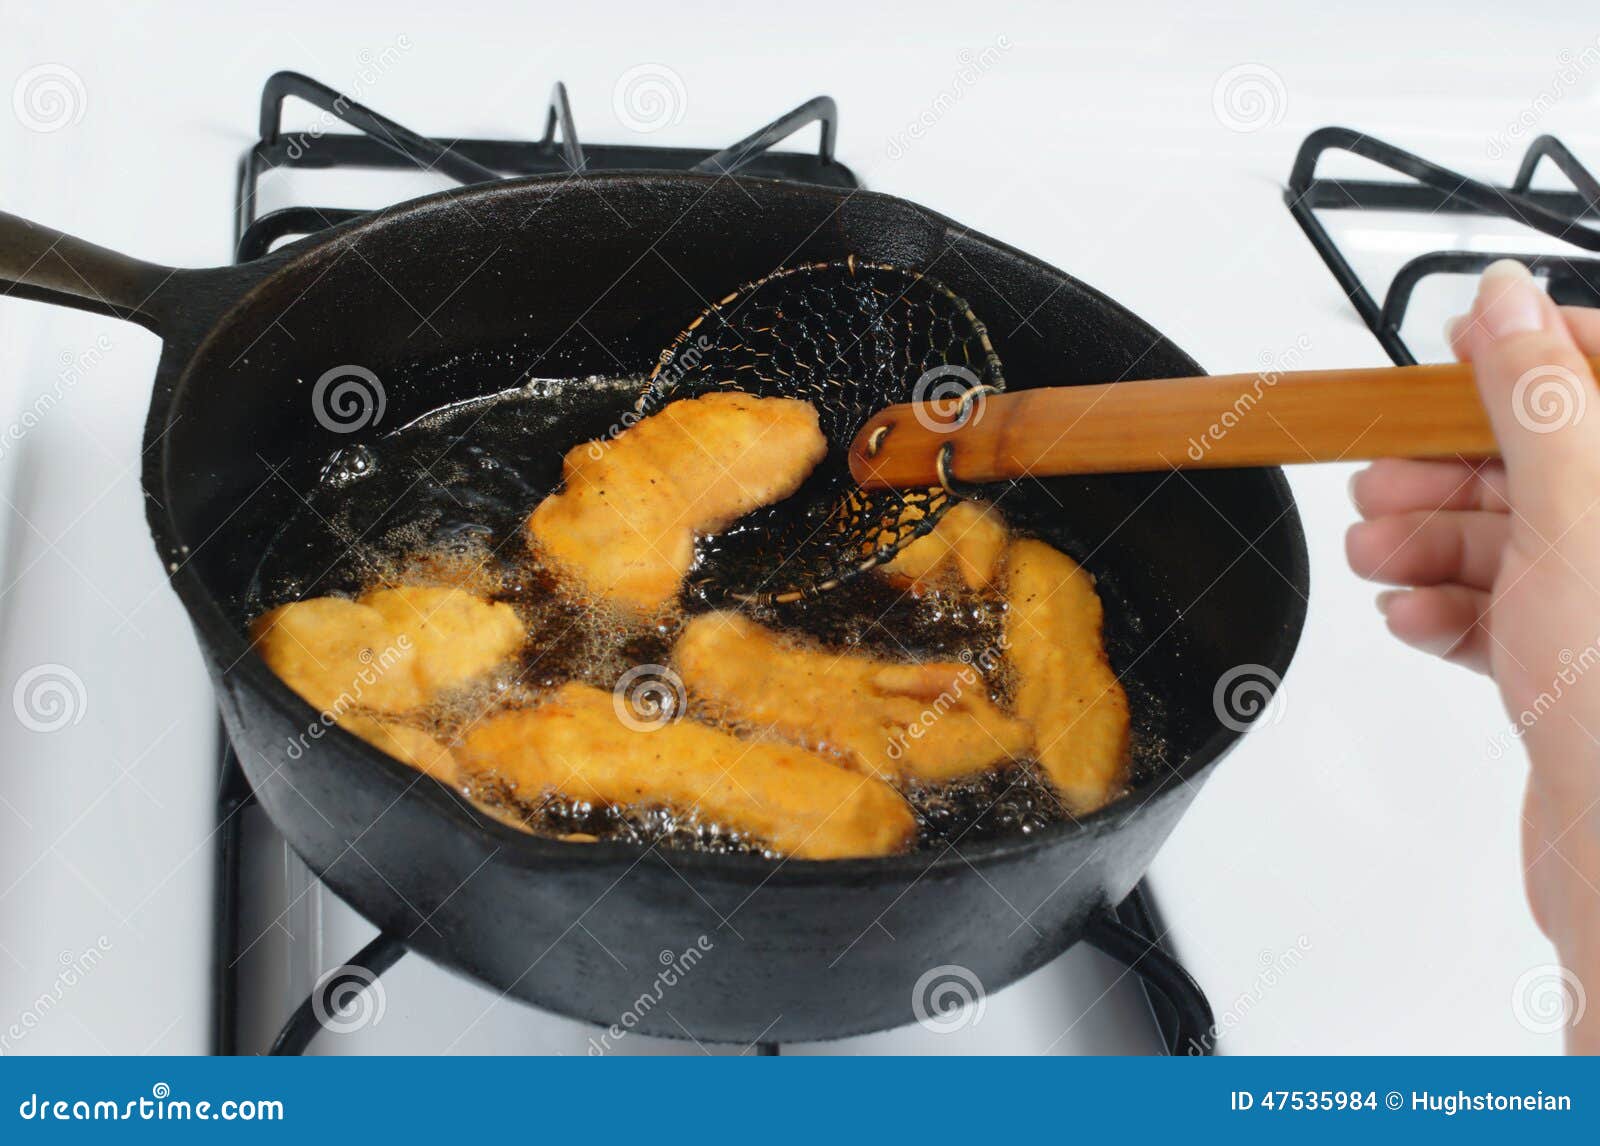 diameter Voeding paar Kip die in olie frituren stock foto. Image of heet, keuken - 47535984